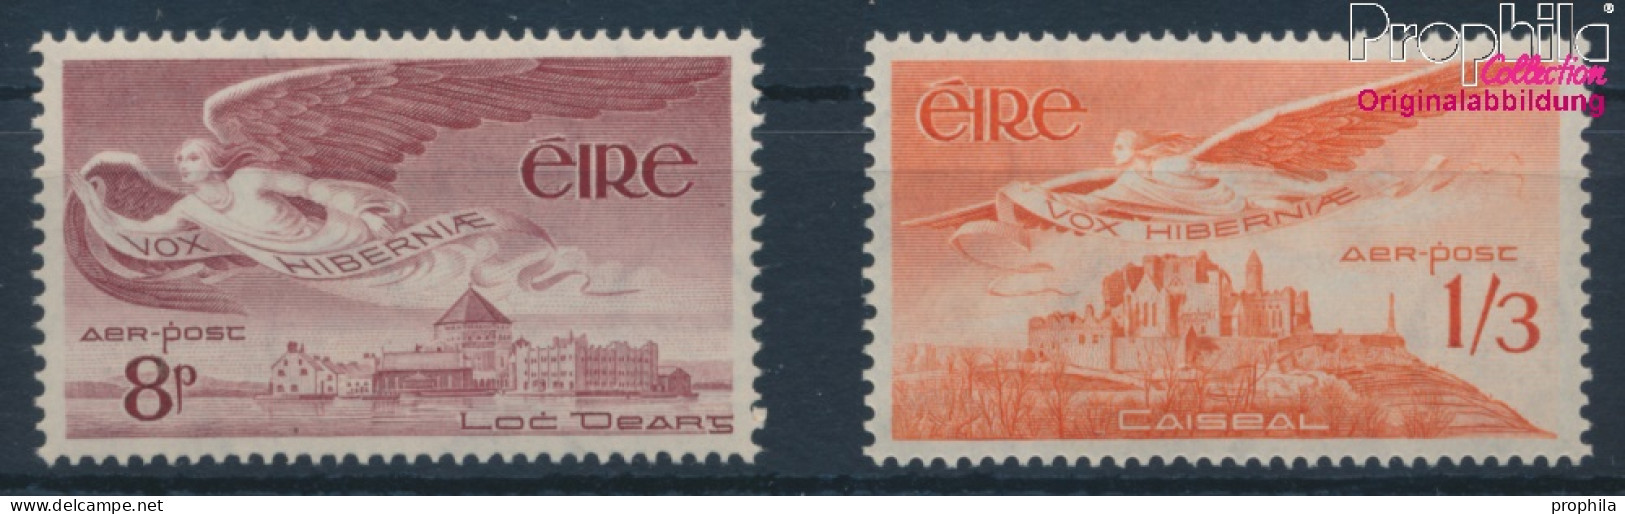 Irland 124-125 (kompl.Ausg.) Postfrisch 1954 Engel (10398342 - Ongebruikt